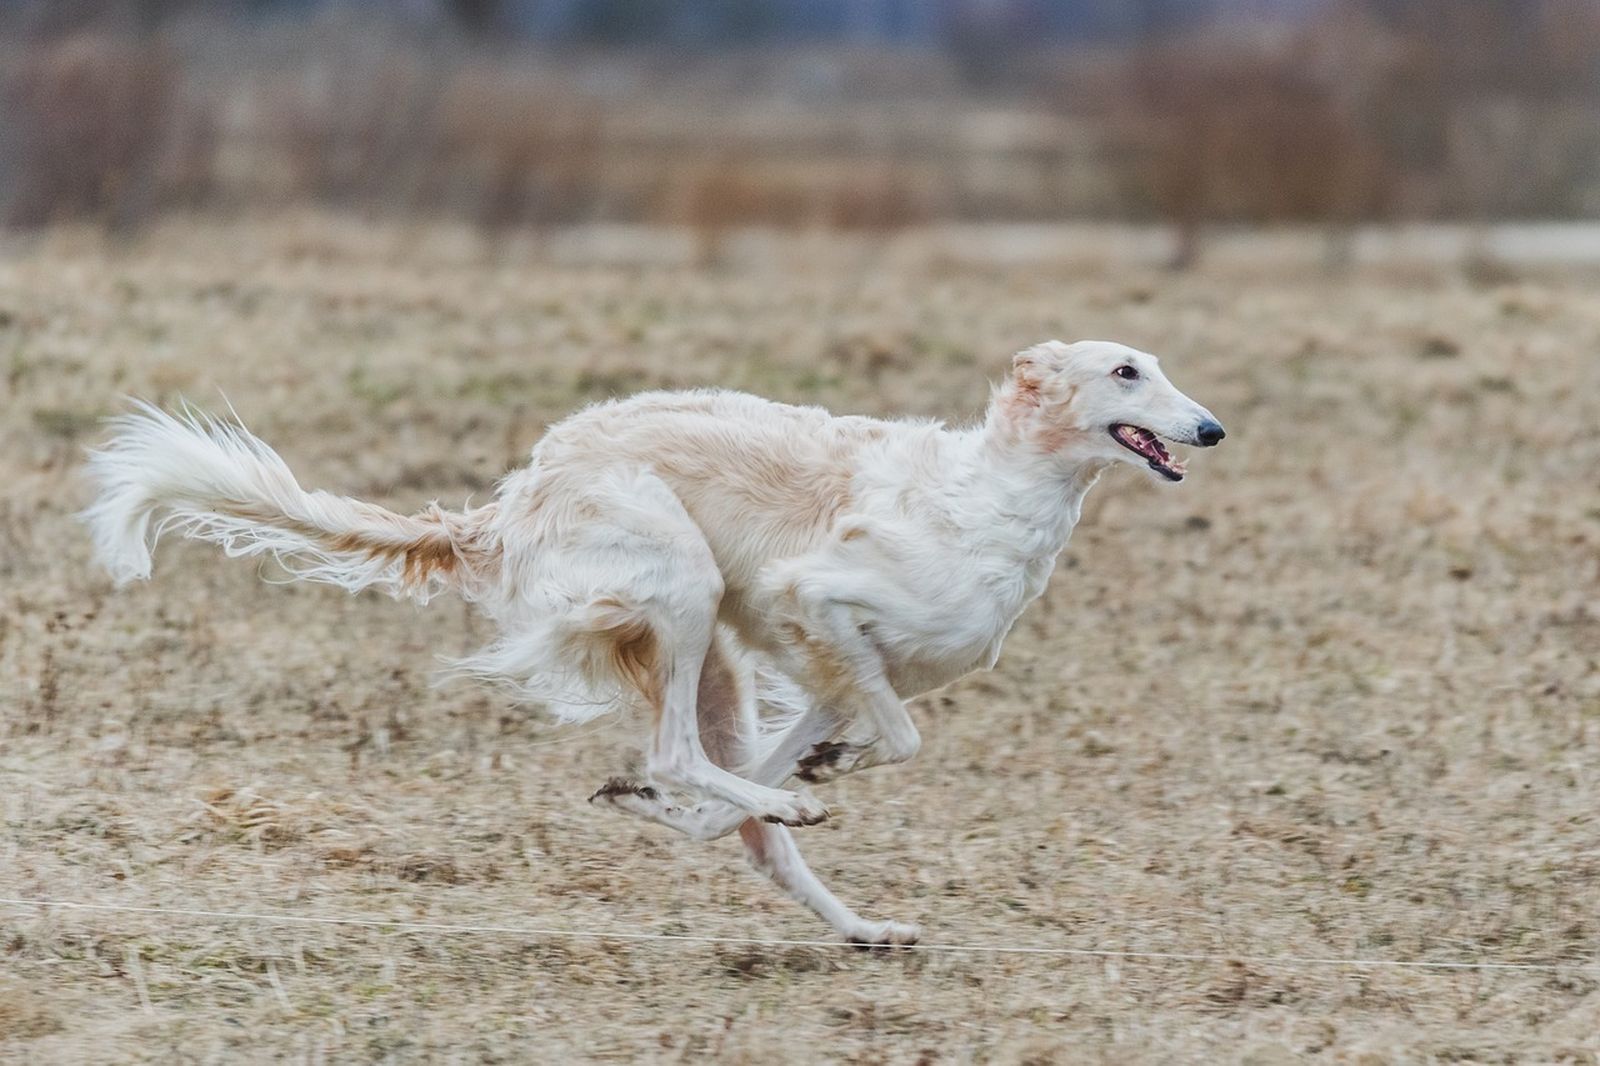 Ein hellbeige-braunfarbener Windhund mit längerem Haar läuft seitlich zum Betrachter über das Feld